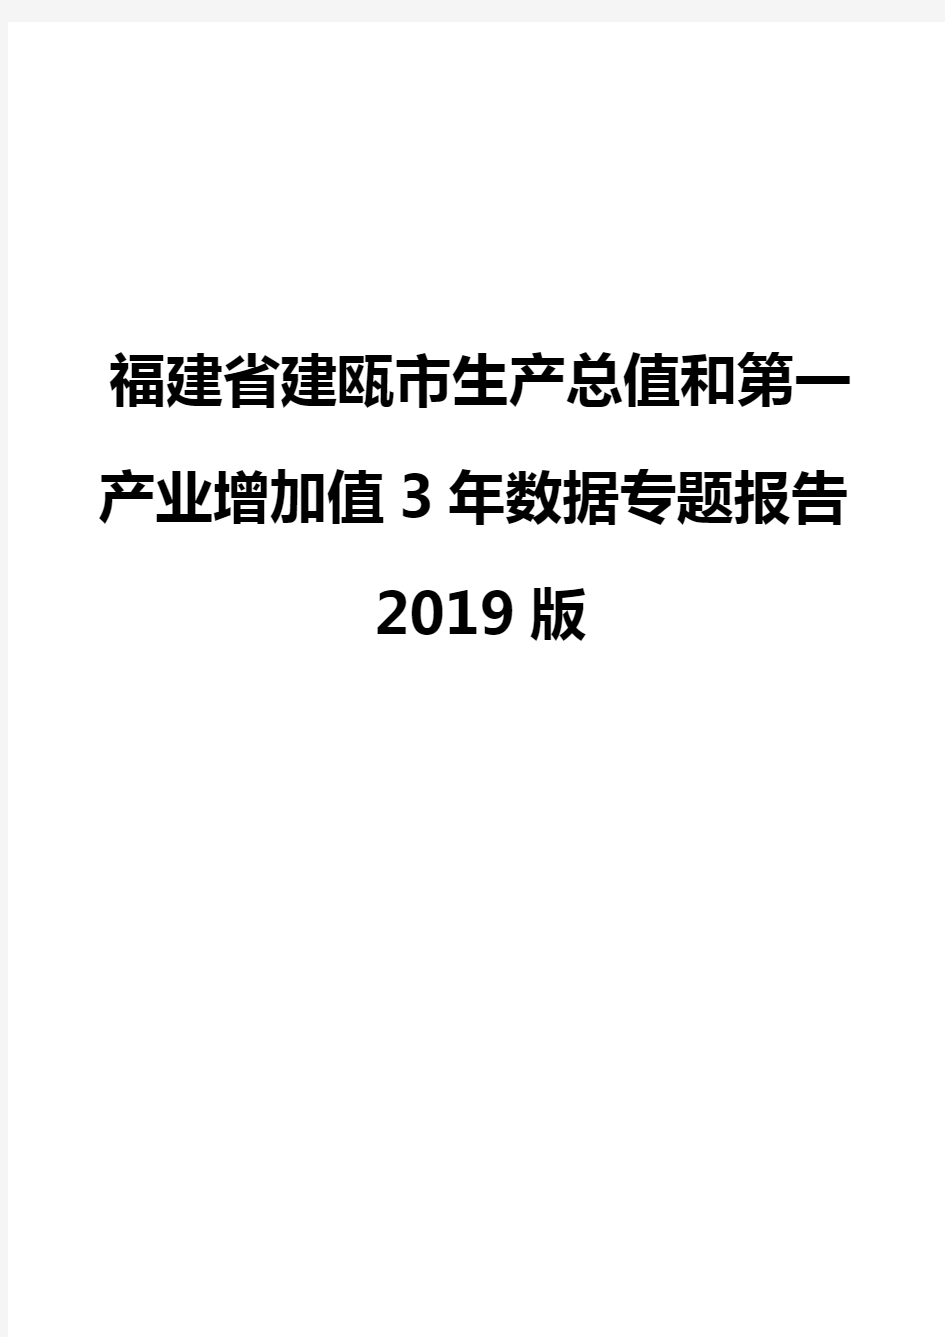 福建省建瓯市生产总值和第一产业增加值3年数据专题报告2019版